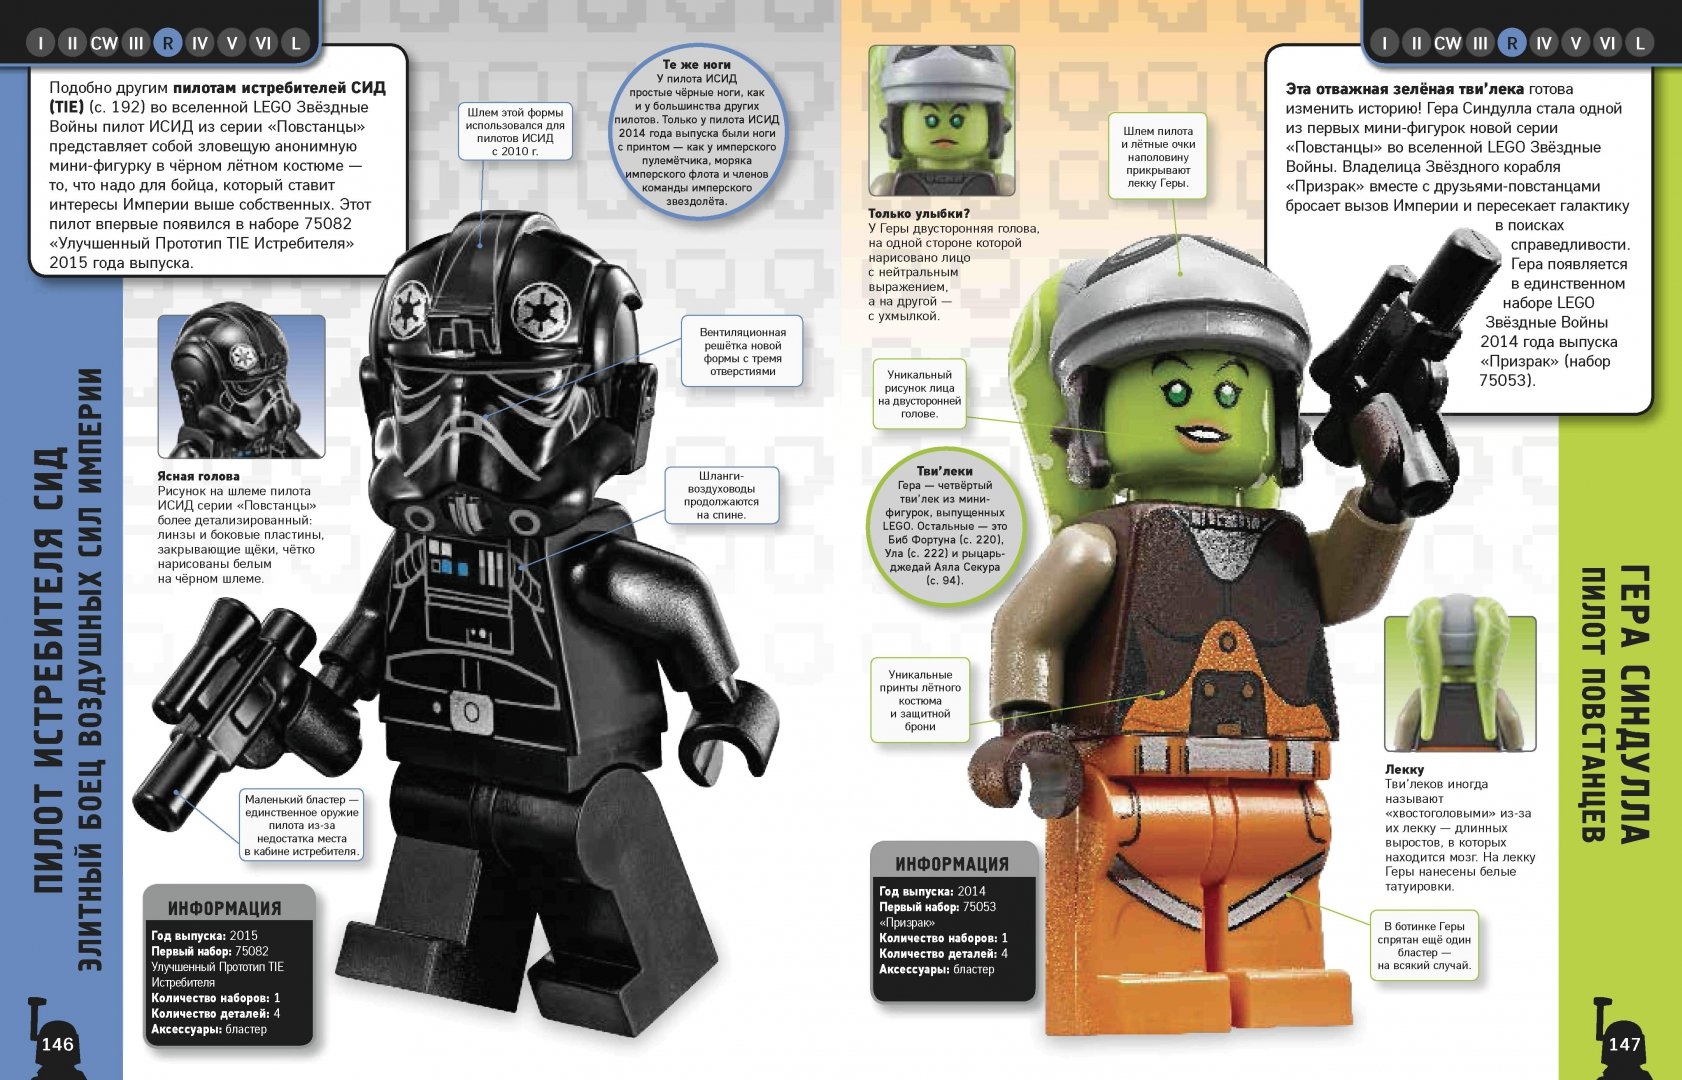 Иллюстрация 3 из 25 для LEGO Star Wars. Полная коллекция мини-фигурок со всей галактики - Долан, Доусетт, Лэст | Лабиринт - книги. Источник: Лабиринт